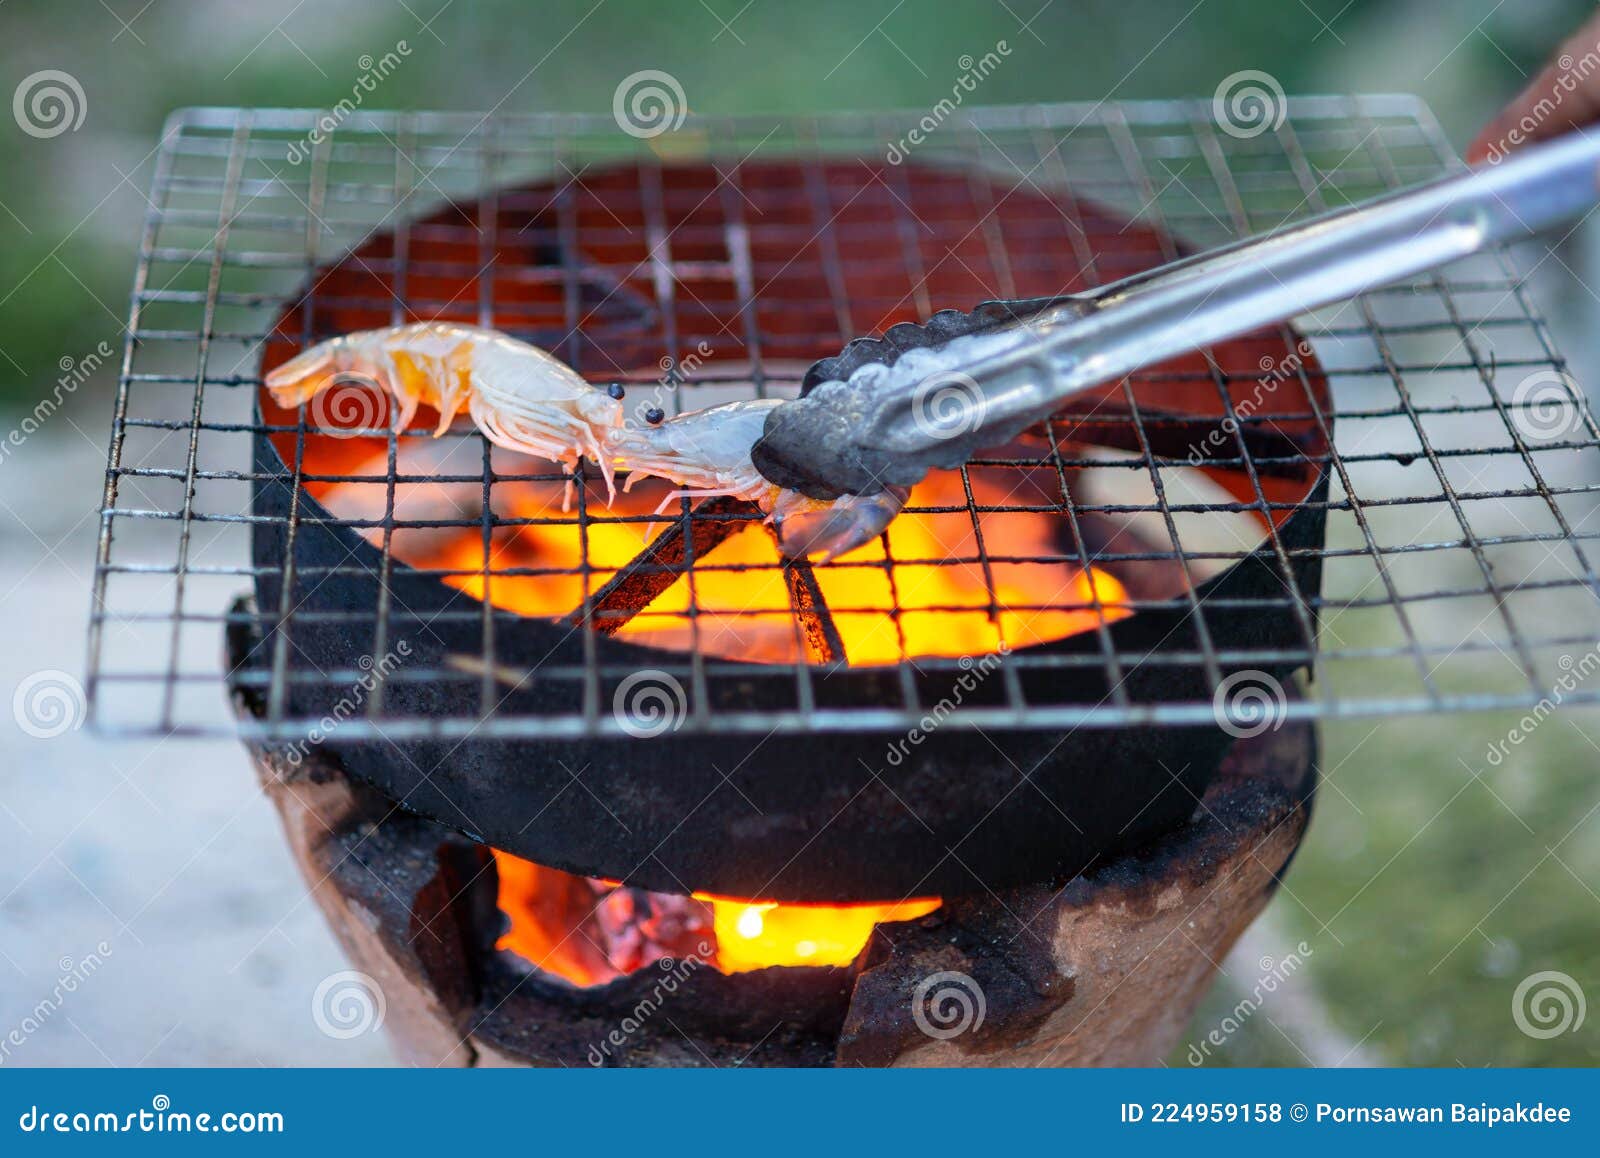 Viande Sur Grille Barbecue Sur Une Cheminée Photo stock - Image du